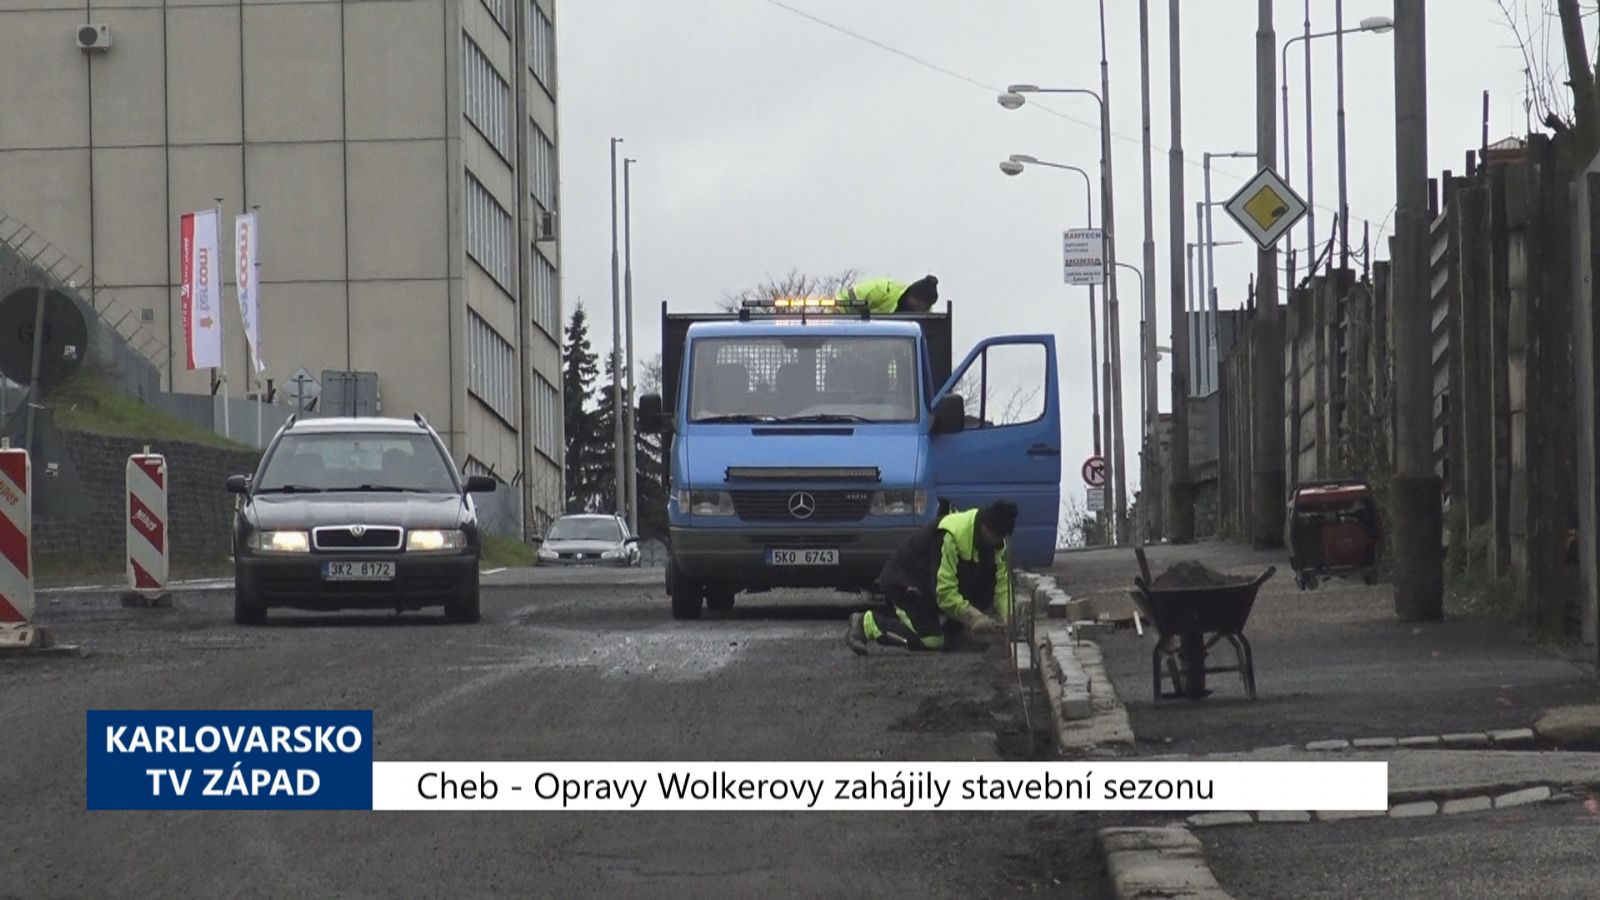 Cheb: Opravy Wolkerovy zahájily stavební sezónu (TV Západ)